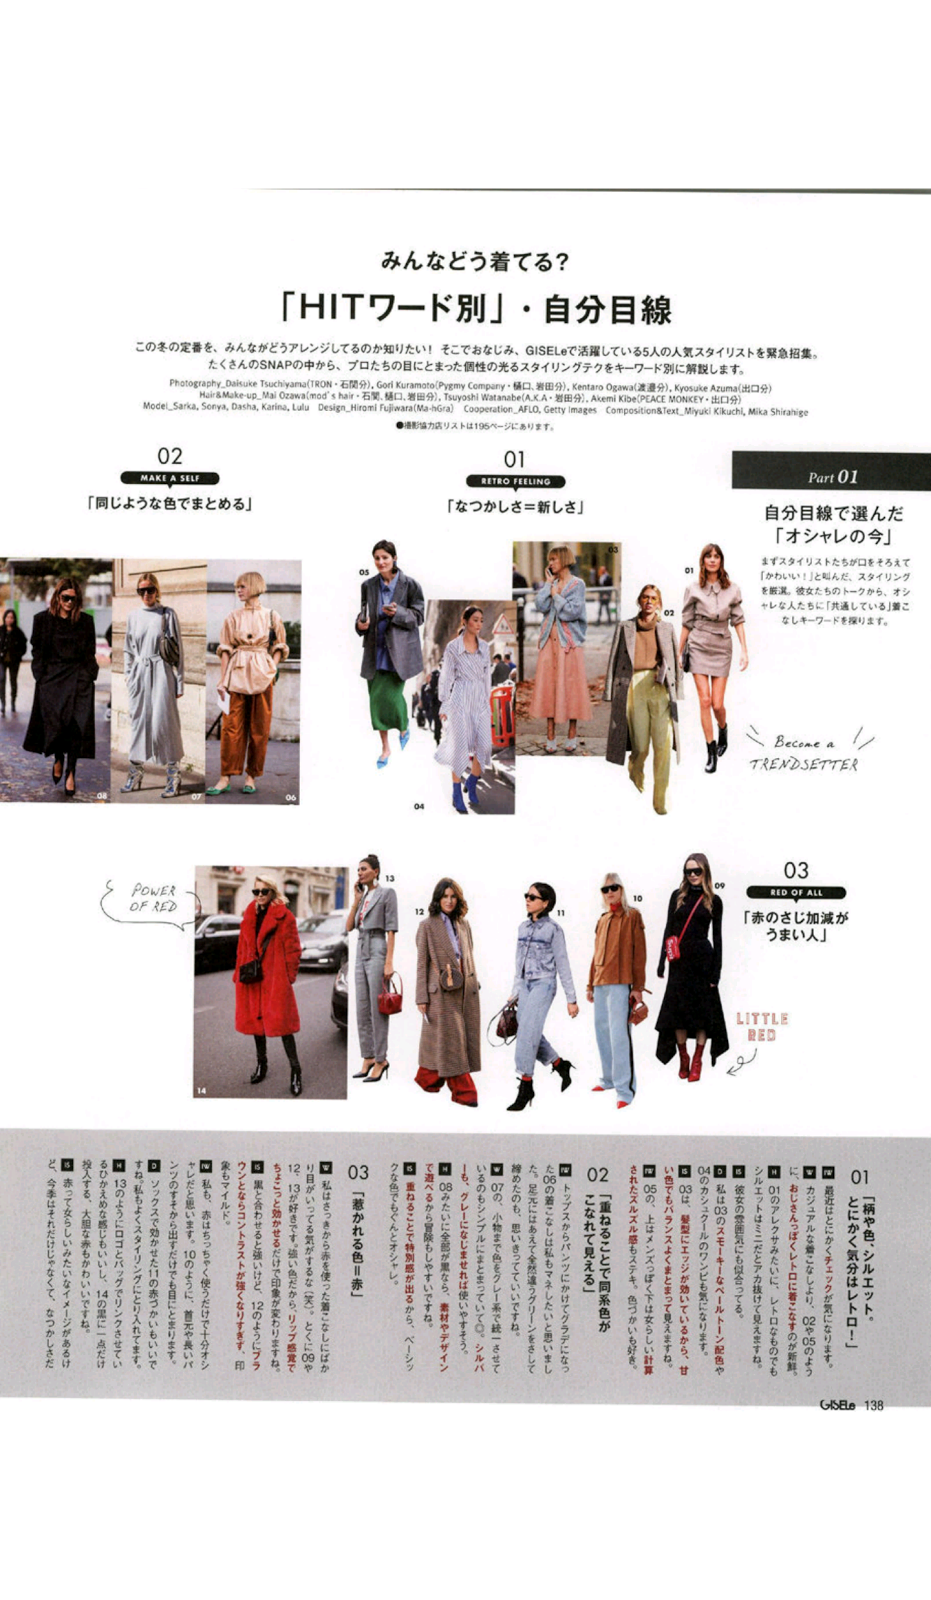 Gisele February 2018 Issue [Japanese Magazine Scans] - Beauty by Rayne